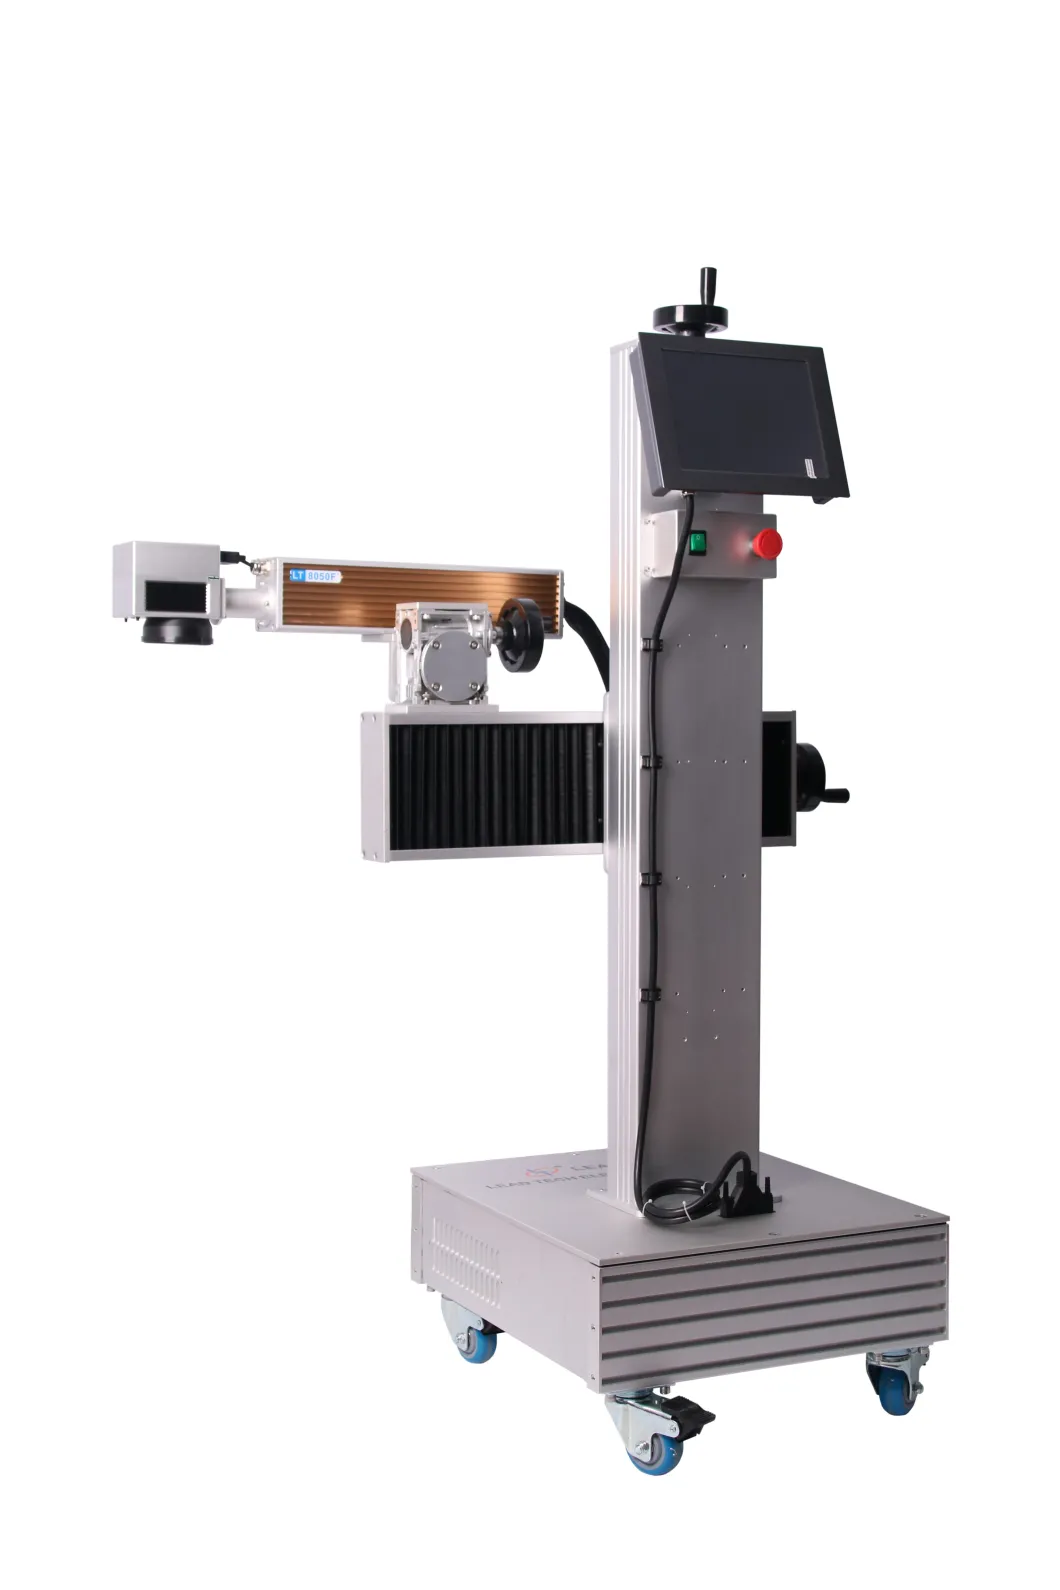 Lt8020f/Lt8030f/Lt8050f Marking Machine Date Metal Plastic Fiber Laser Printer